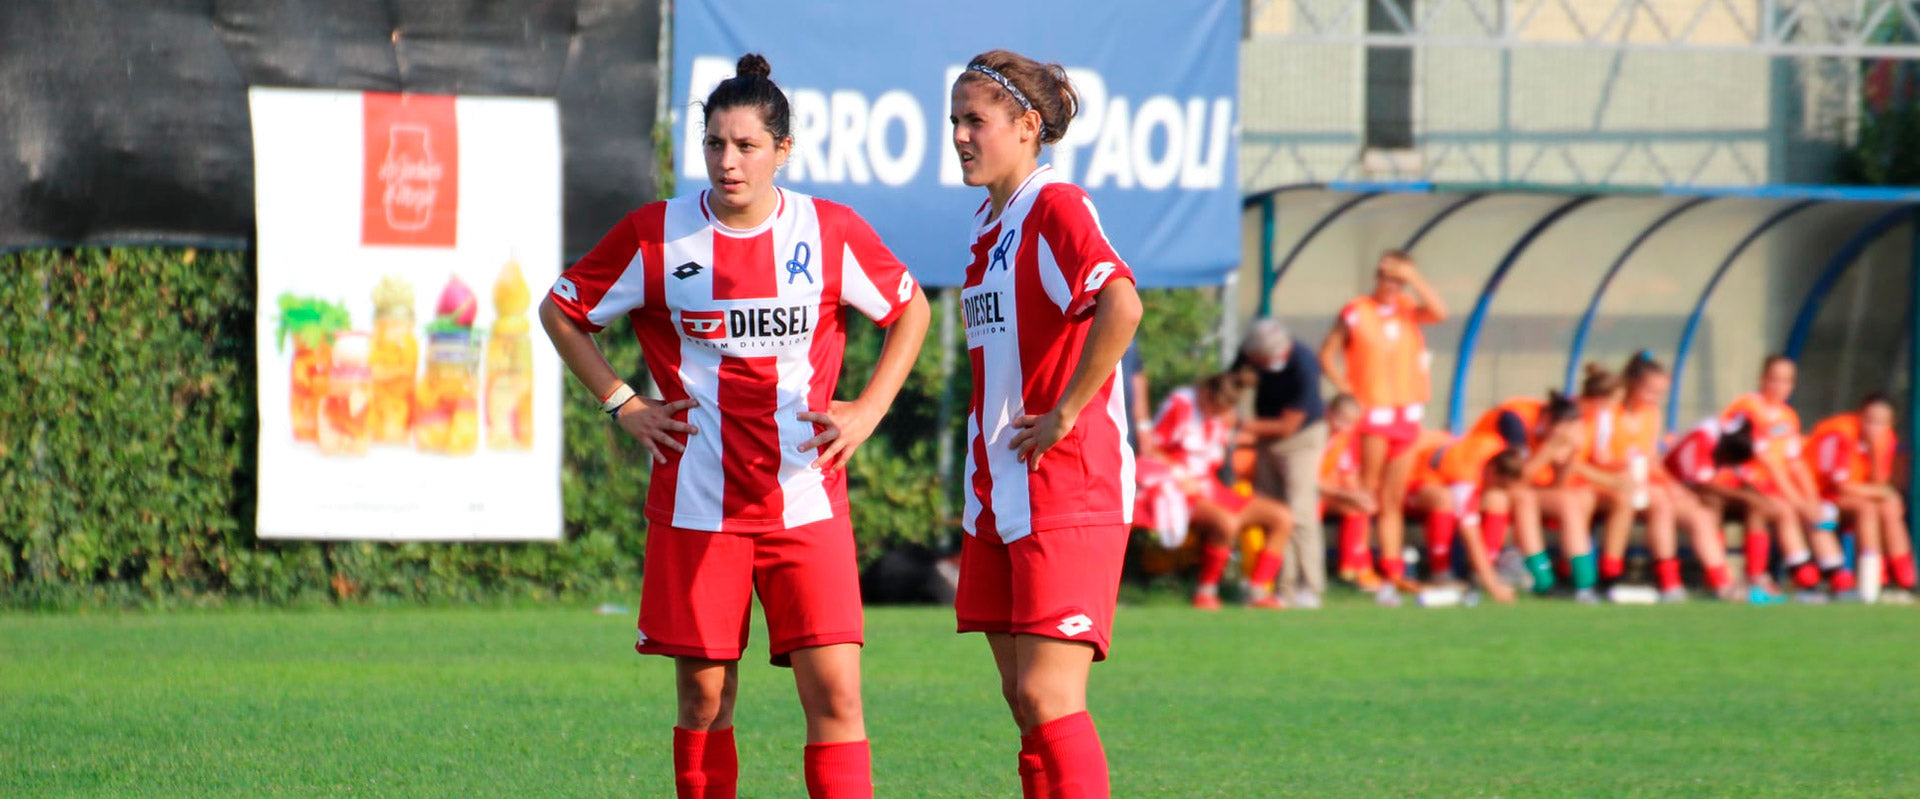 Gli Amici dello Sport - Vicenza Calcio Femminile